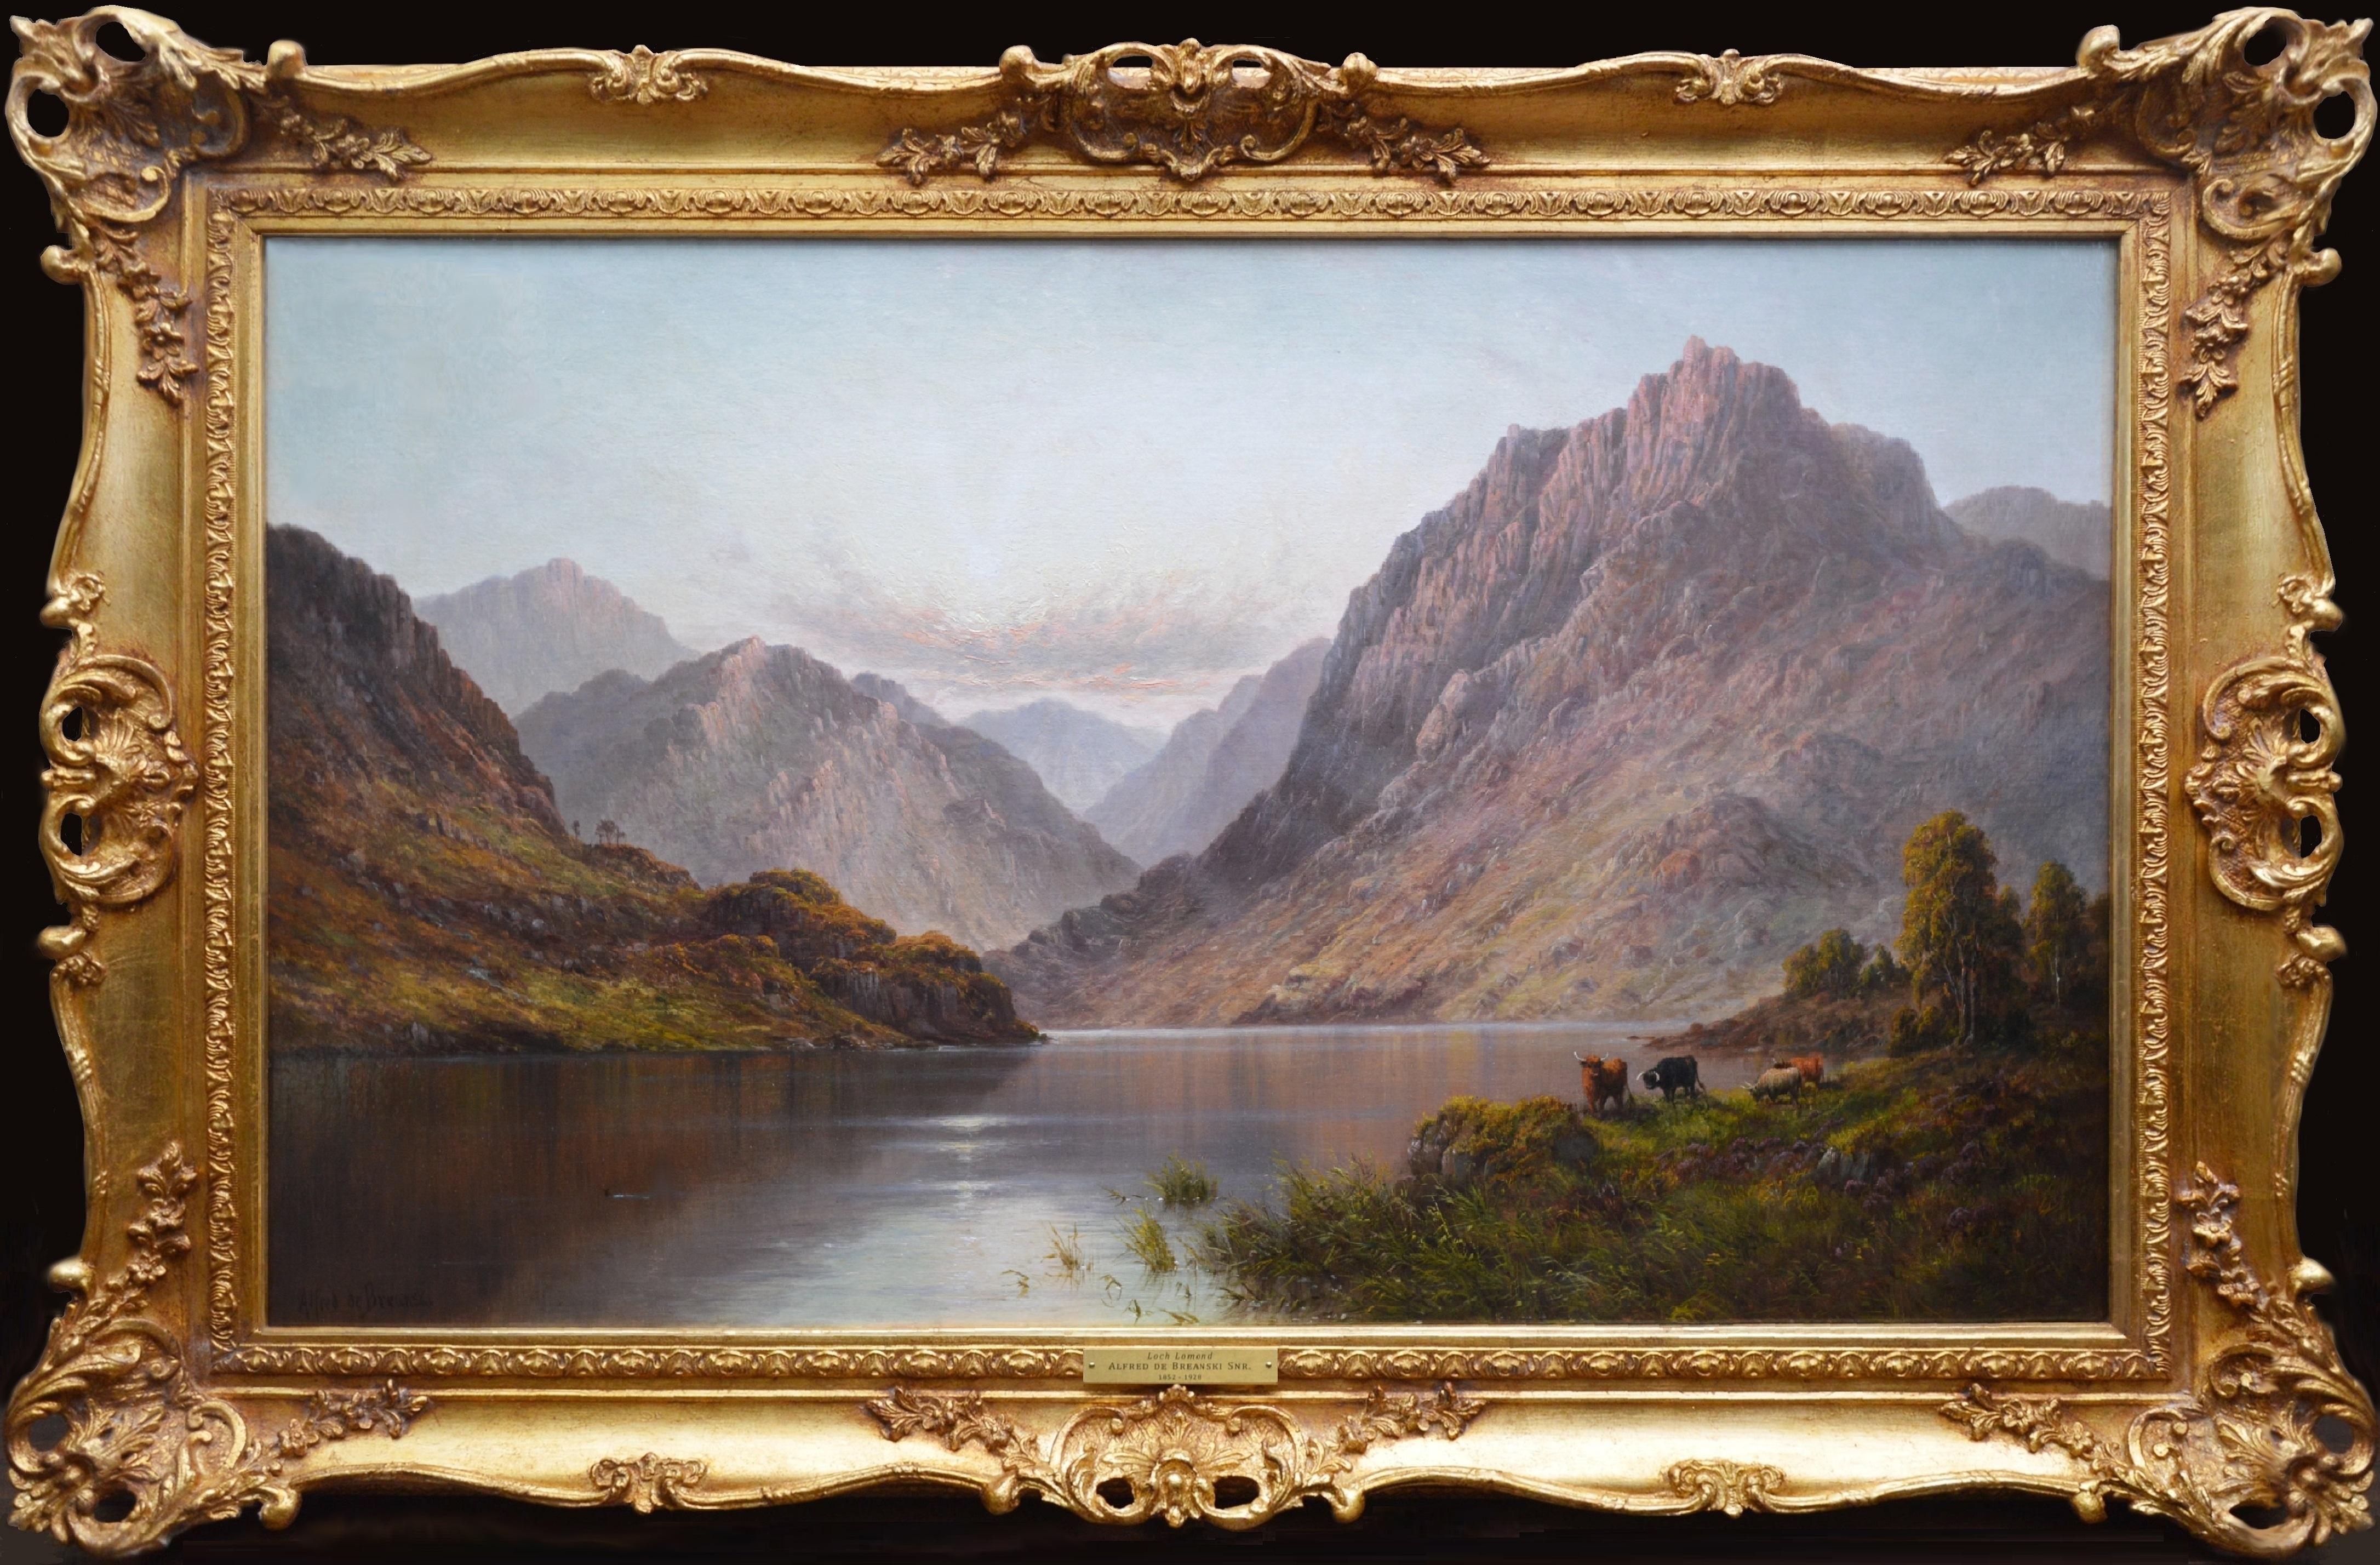 Landscape Painting Alfred de Breanski Sr. - Loch Lomond - Très grande peinture à l'huile du 19ème siècle sur les paysages des Highlands écossais